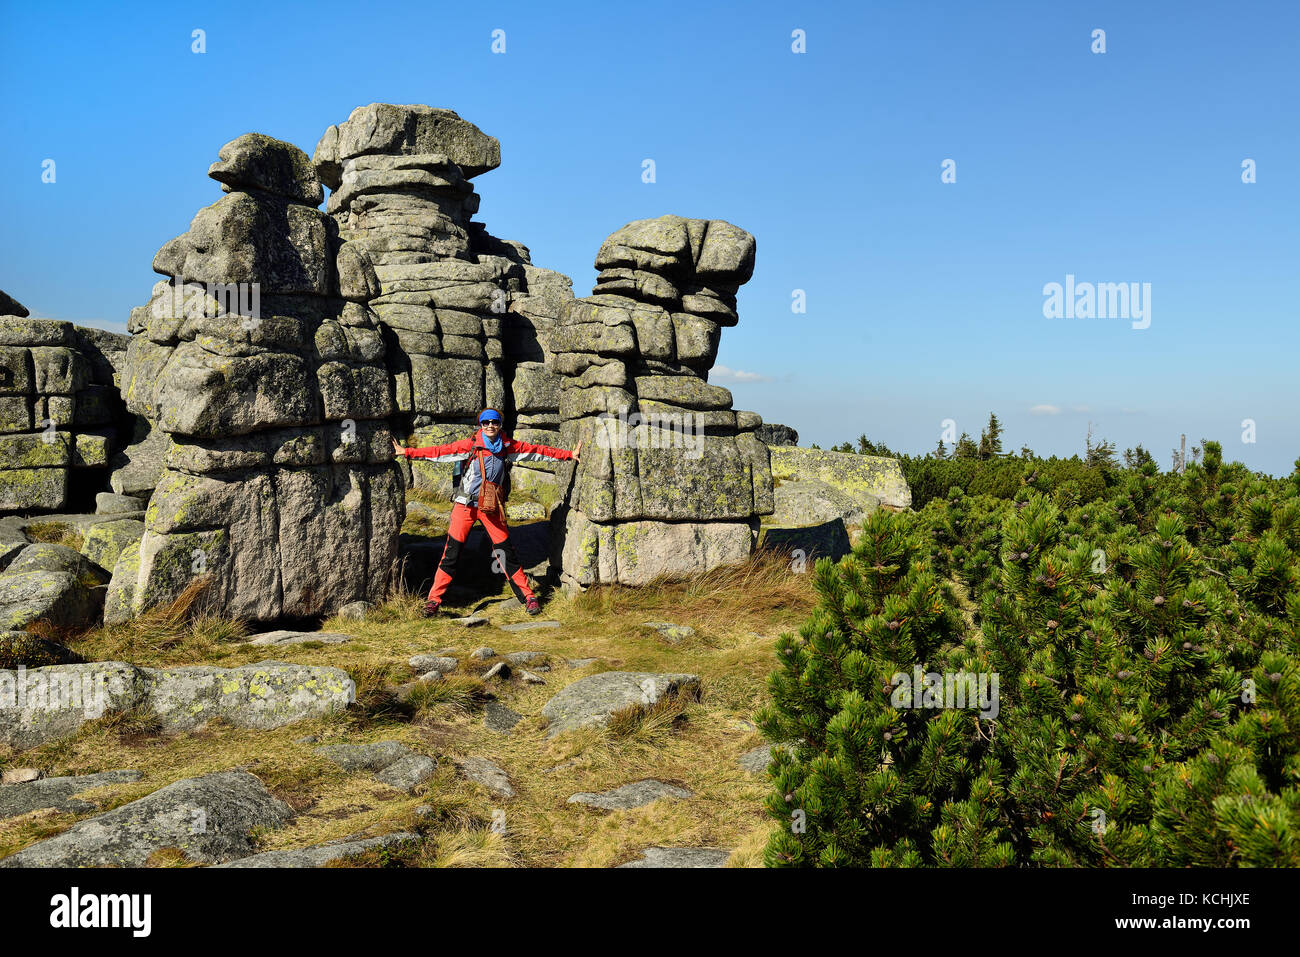 Randonnées le long des sentiers touristiques dans le parc national des montagnes de Karkonosze en Pologne avec le sac à dos sur le dos. rock formation czech stones Banque D'Images